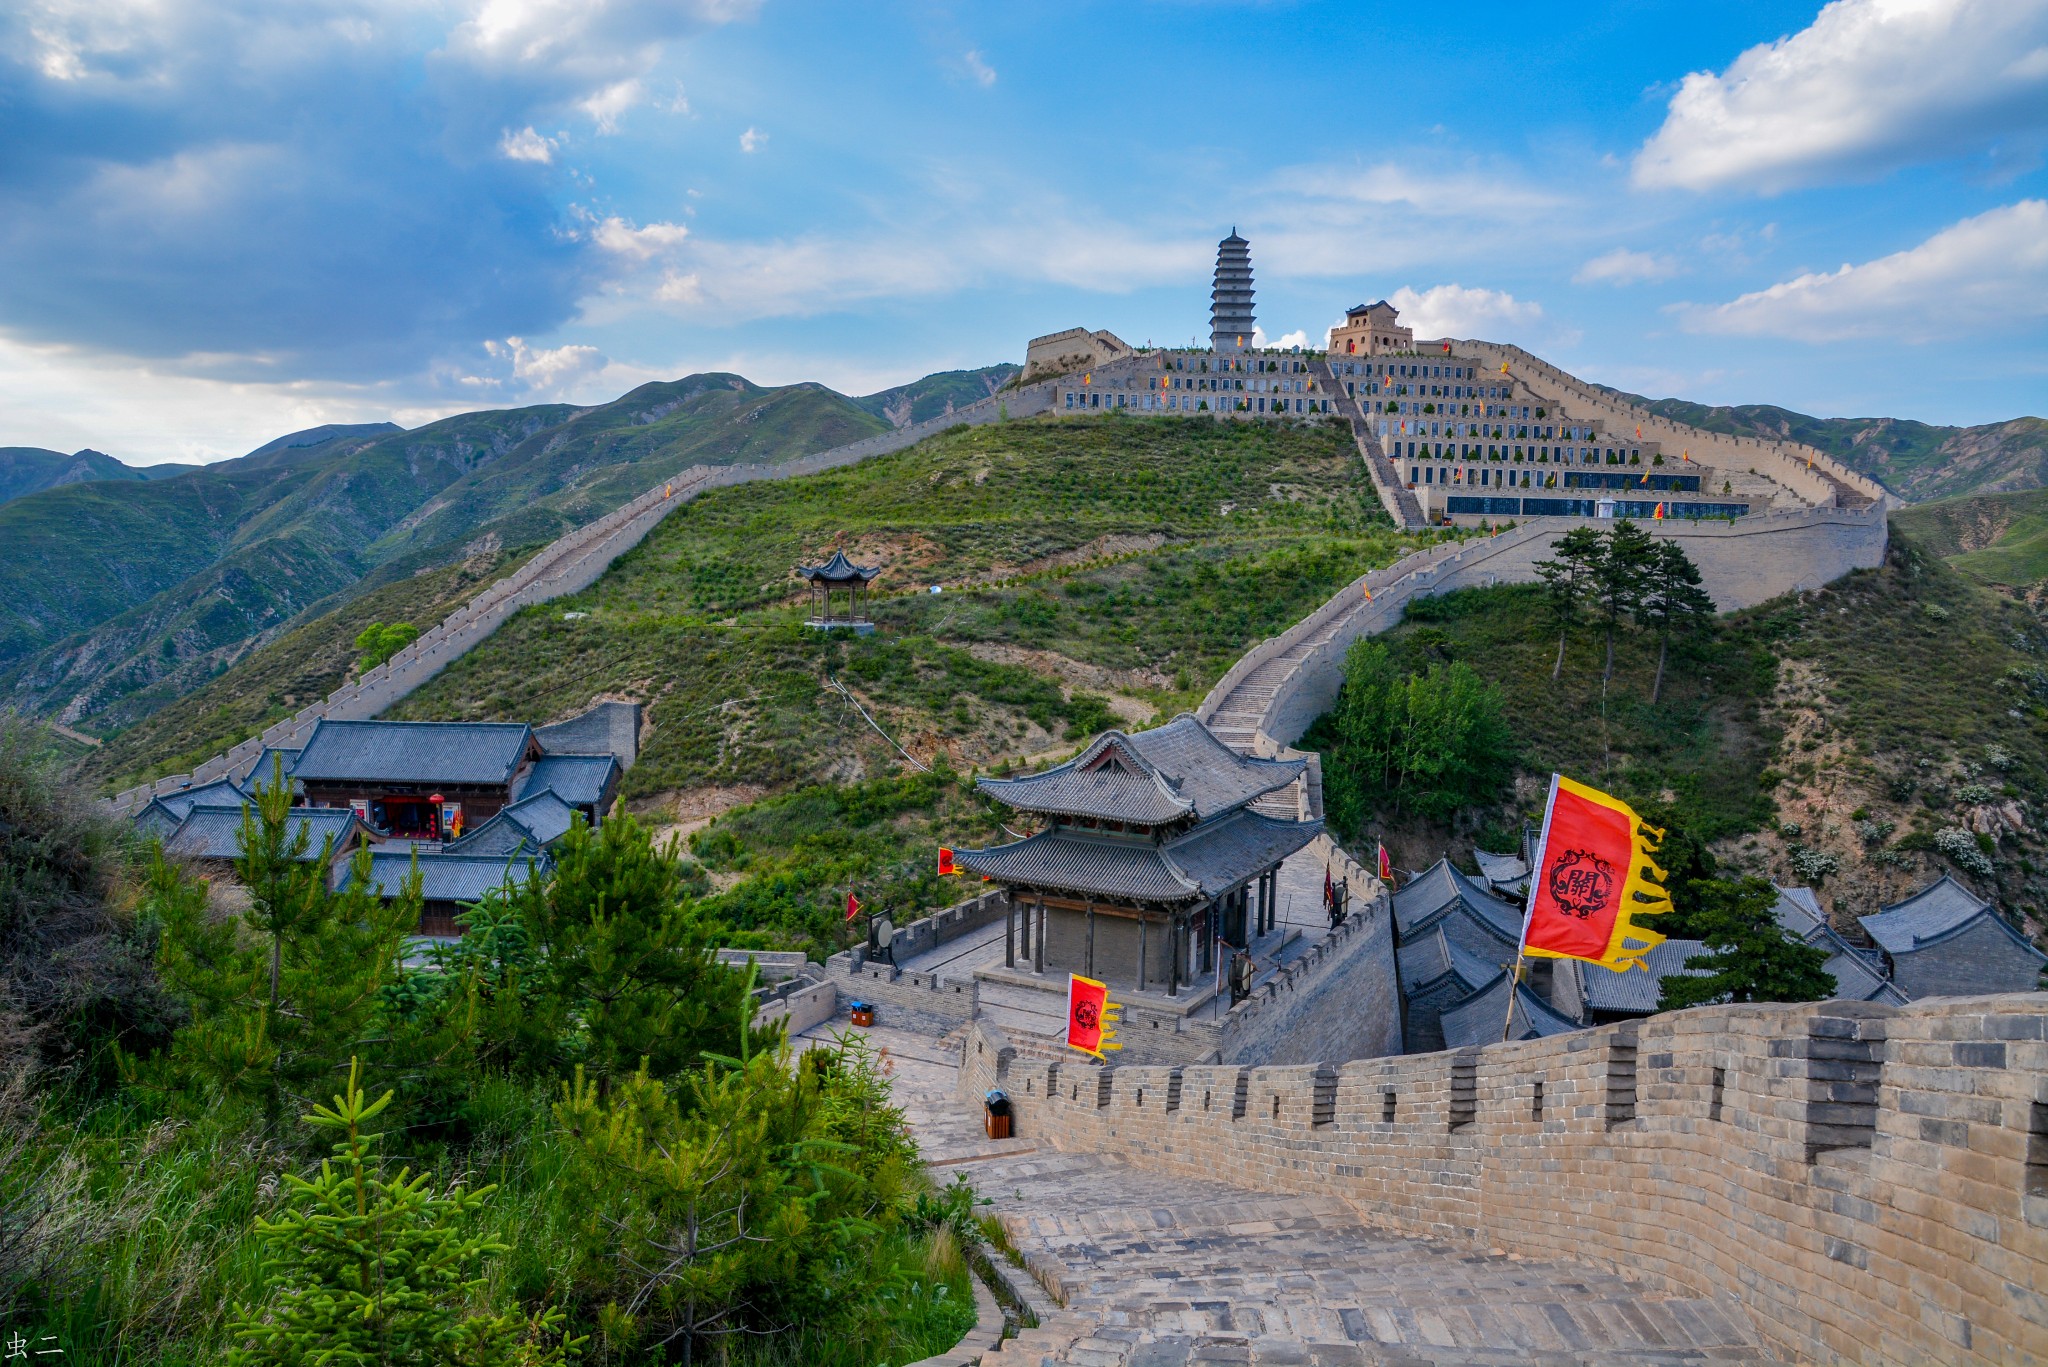 忻州市区旅游景点大全图片